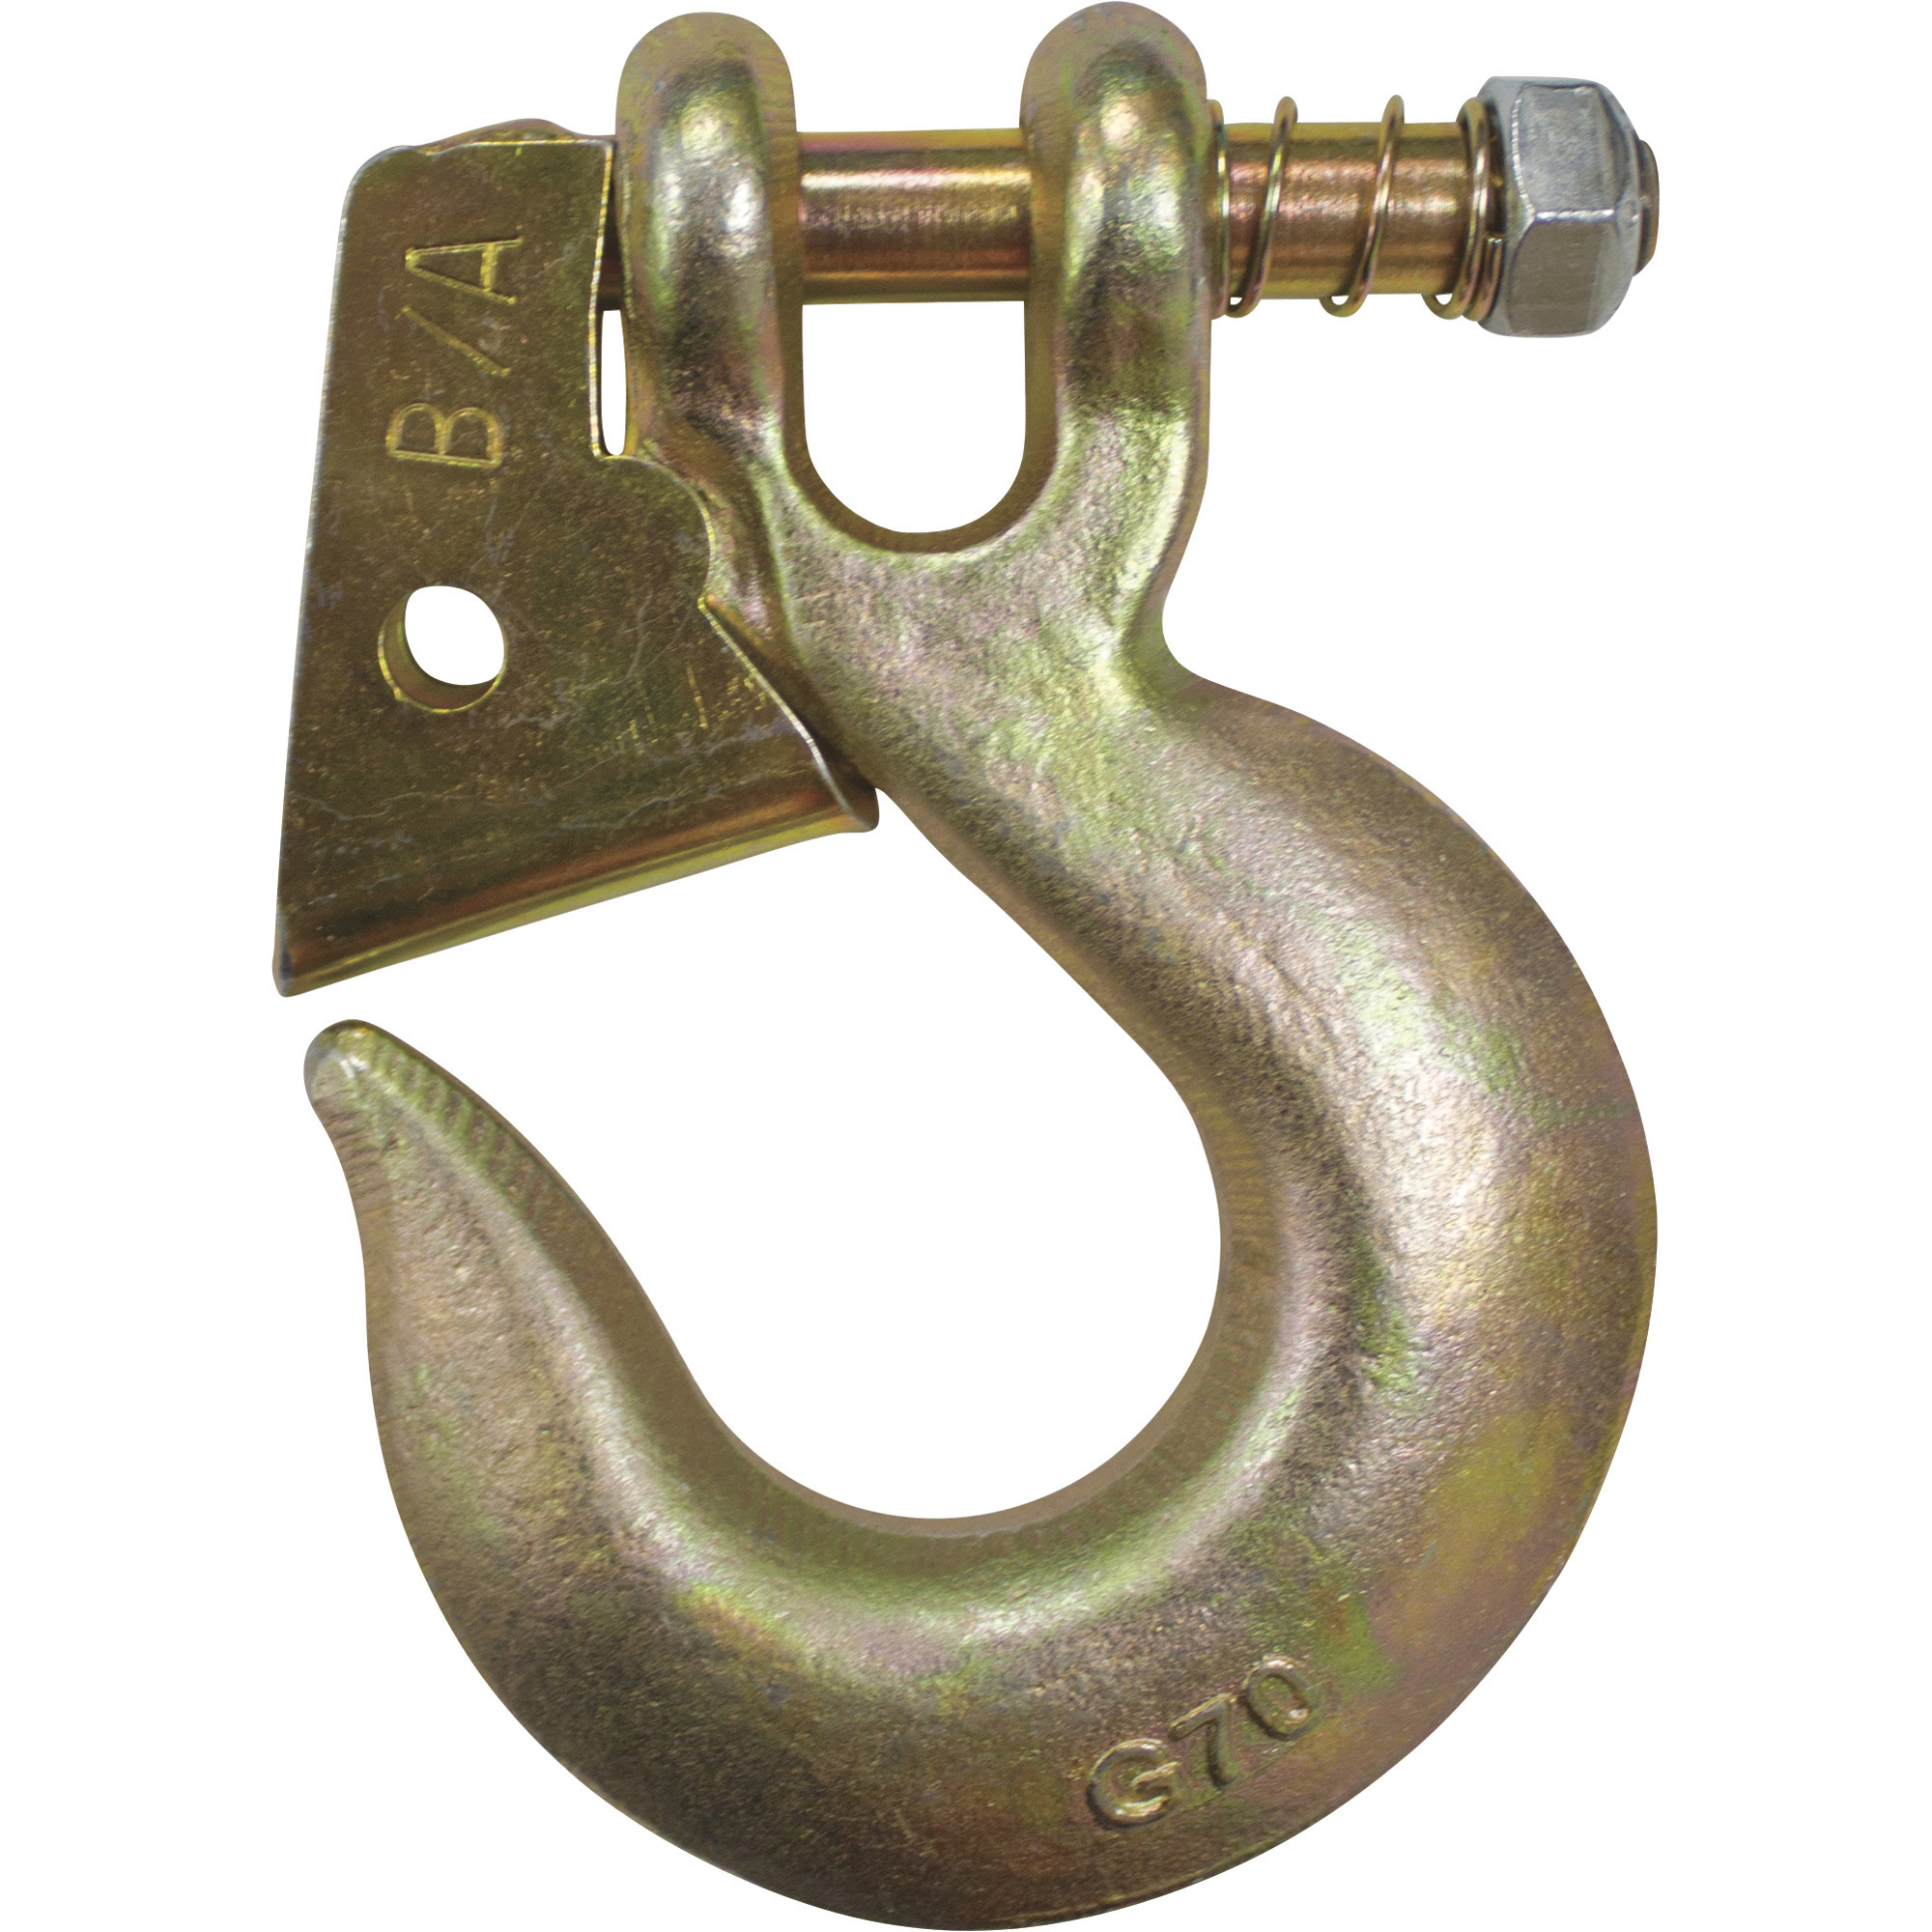 B/A Products Twist Lock Clevis Slip Hook â 5/16Inch, 4.5Inch L, 4,700-Lb. Capacity, Model G7-205-516